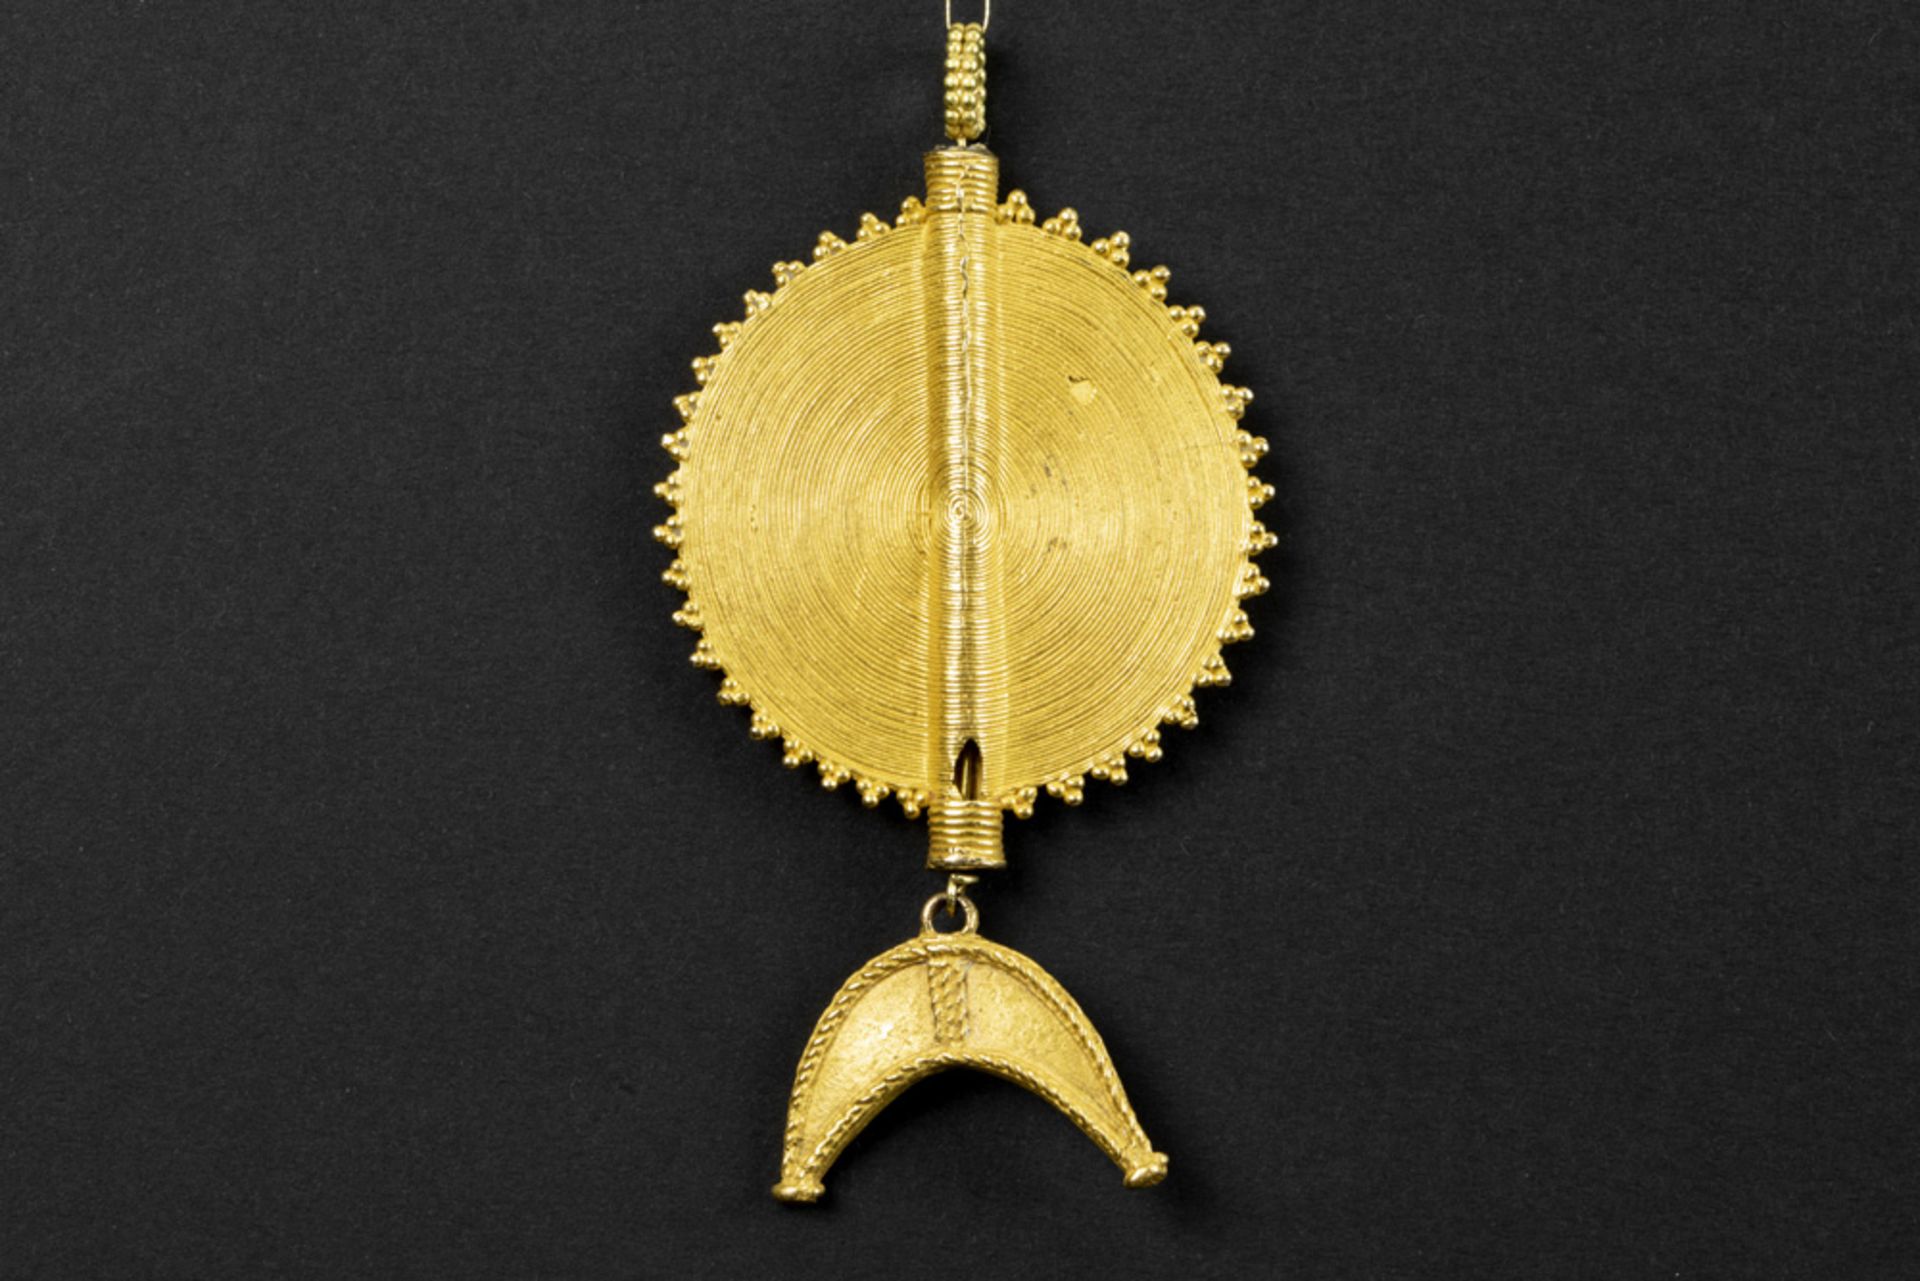 Ivory Coast Baule gold pendant with typical design || AFRIKA / IVOORKUST Baule pendatief in geel